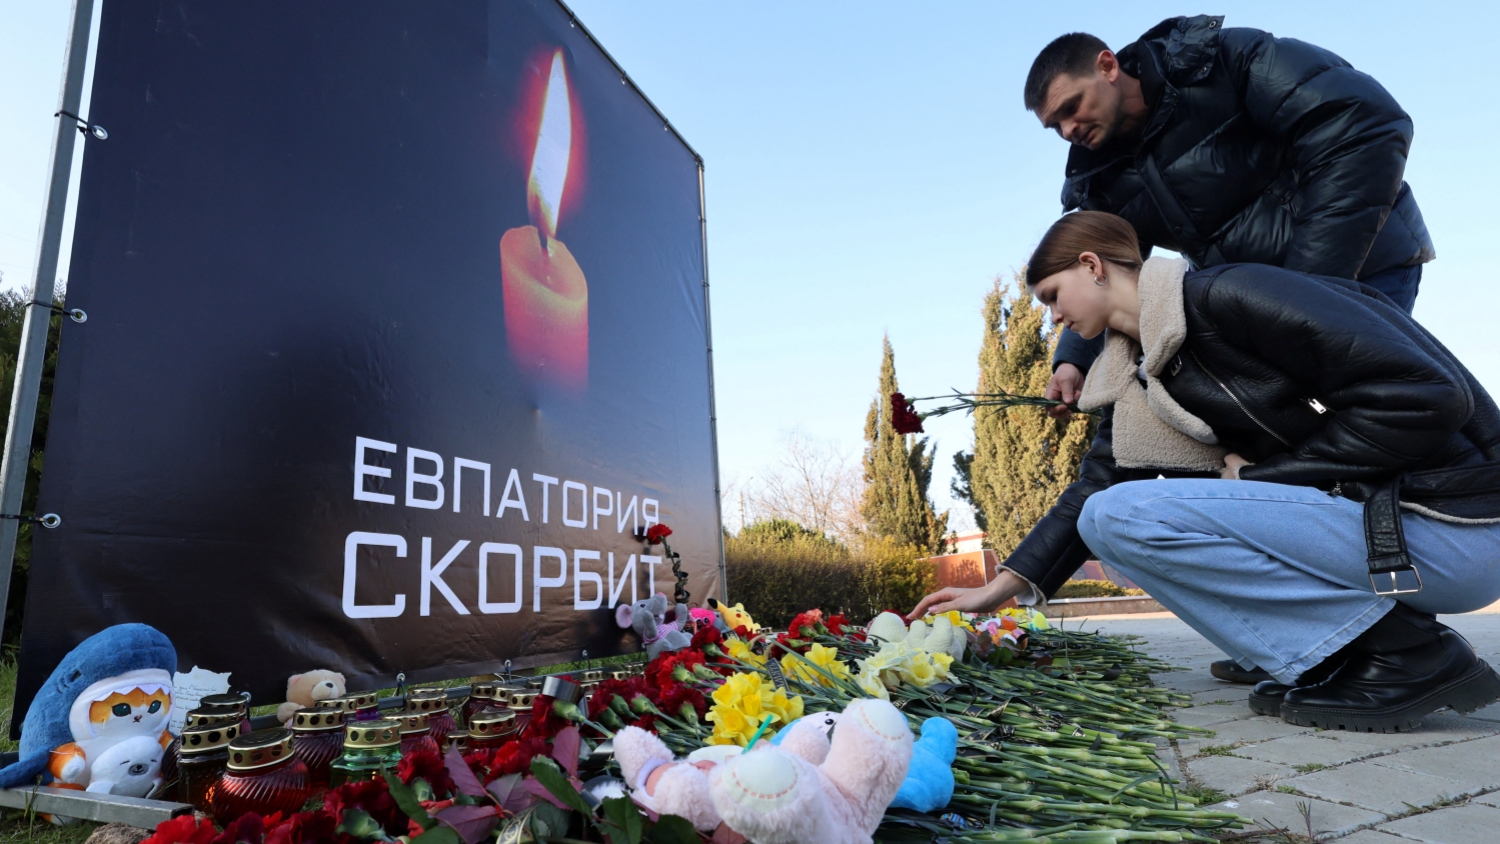 莫斯科恐襲 | 國際社會強烈譴責莫斯科近郊恐襲事件